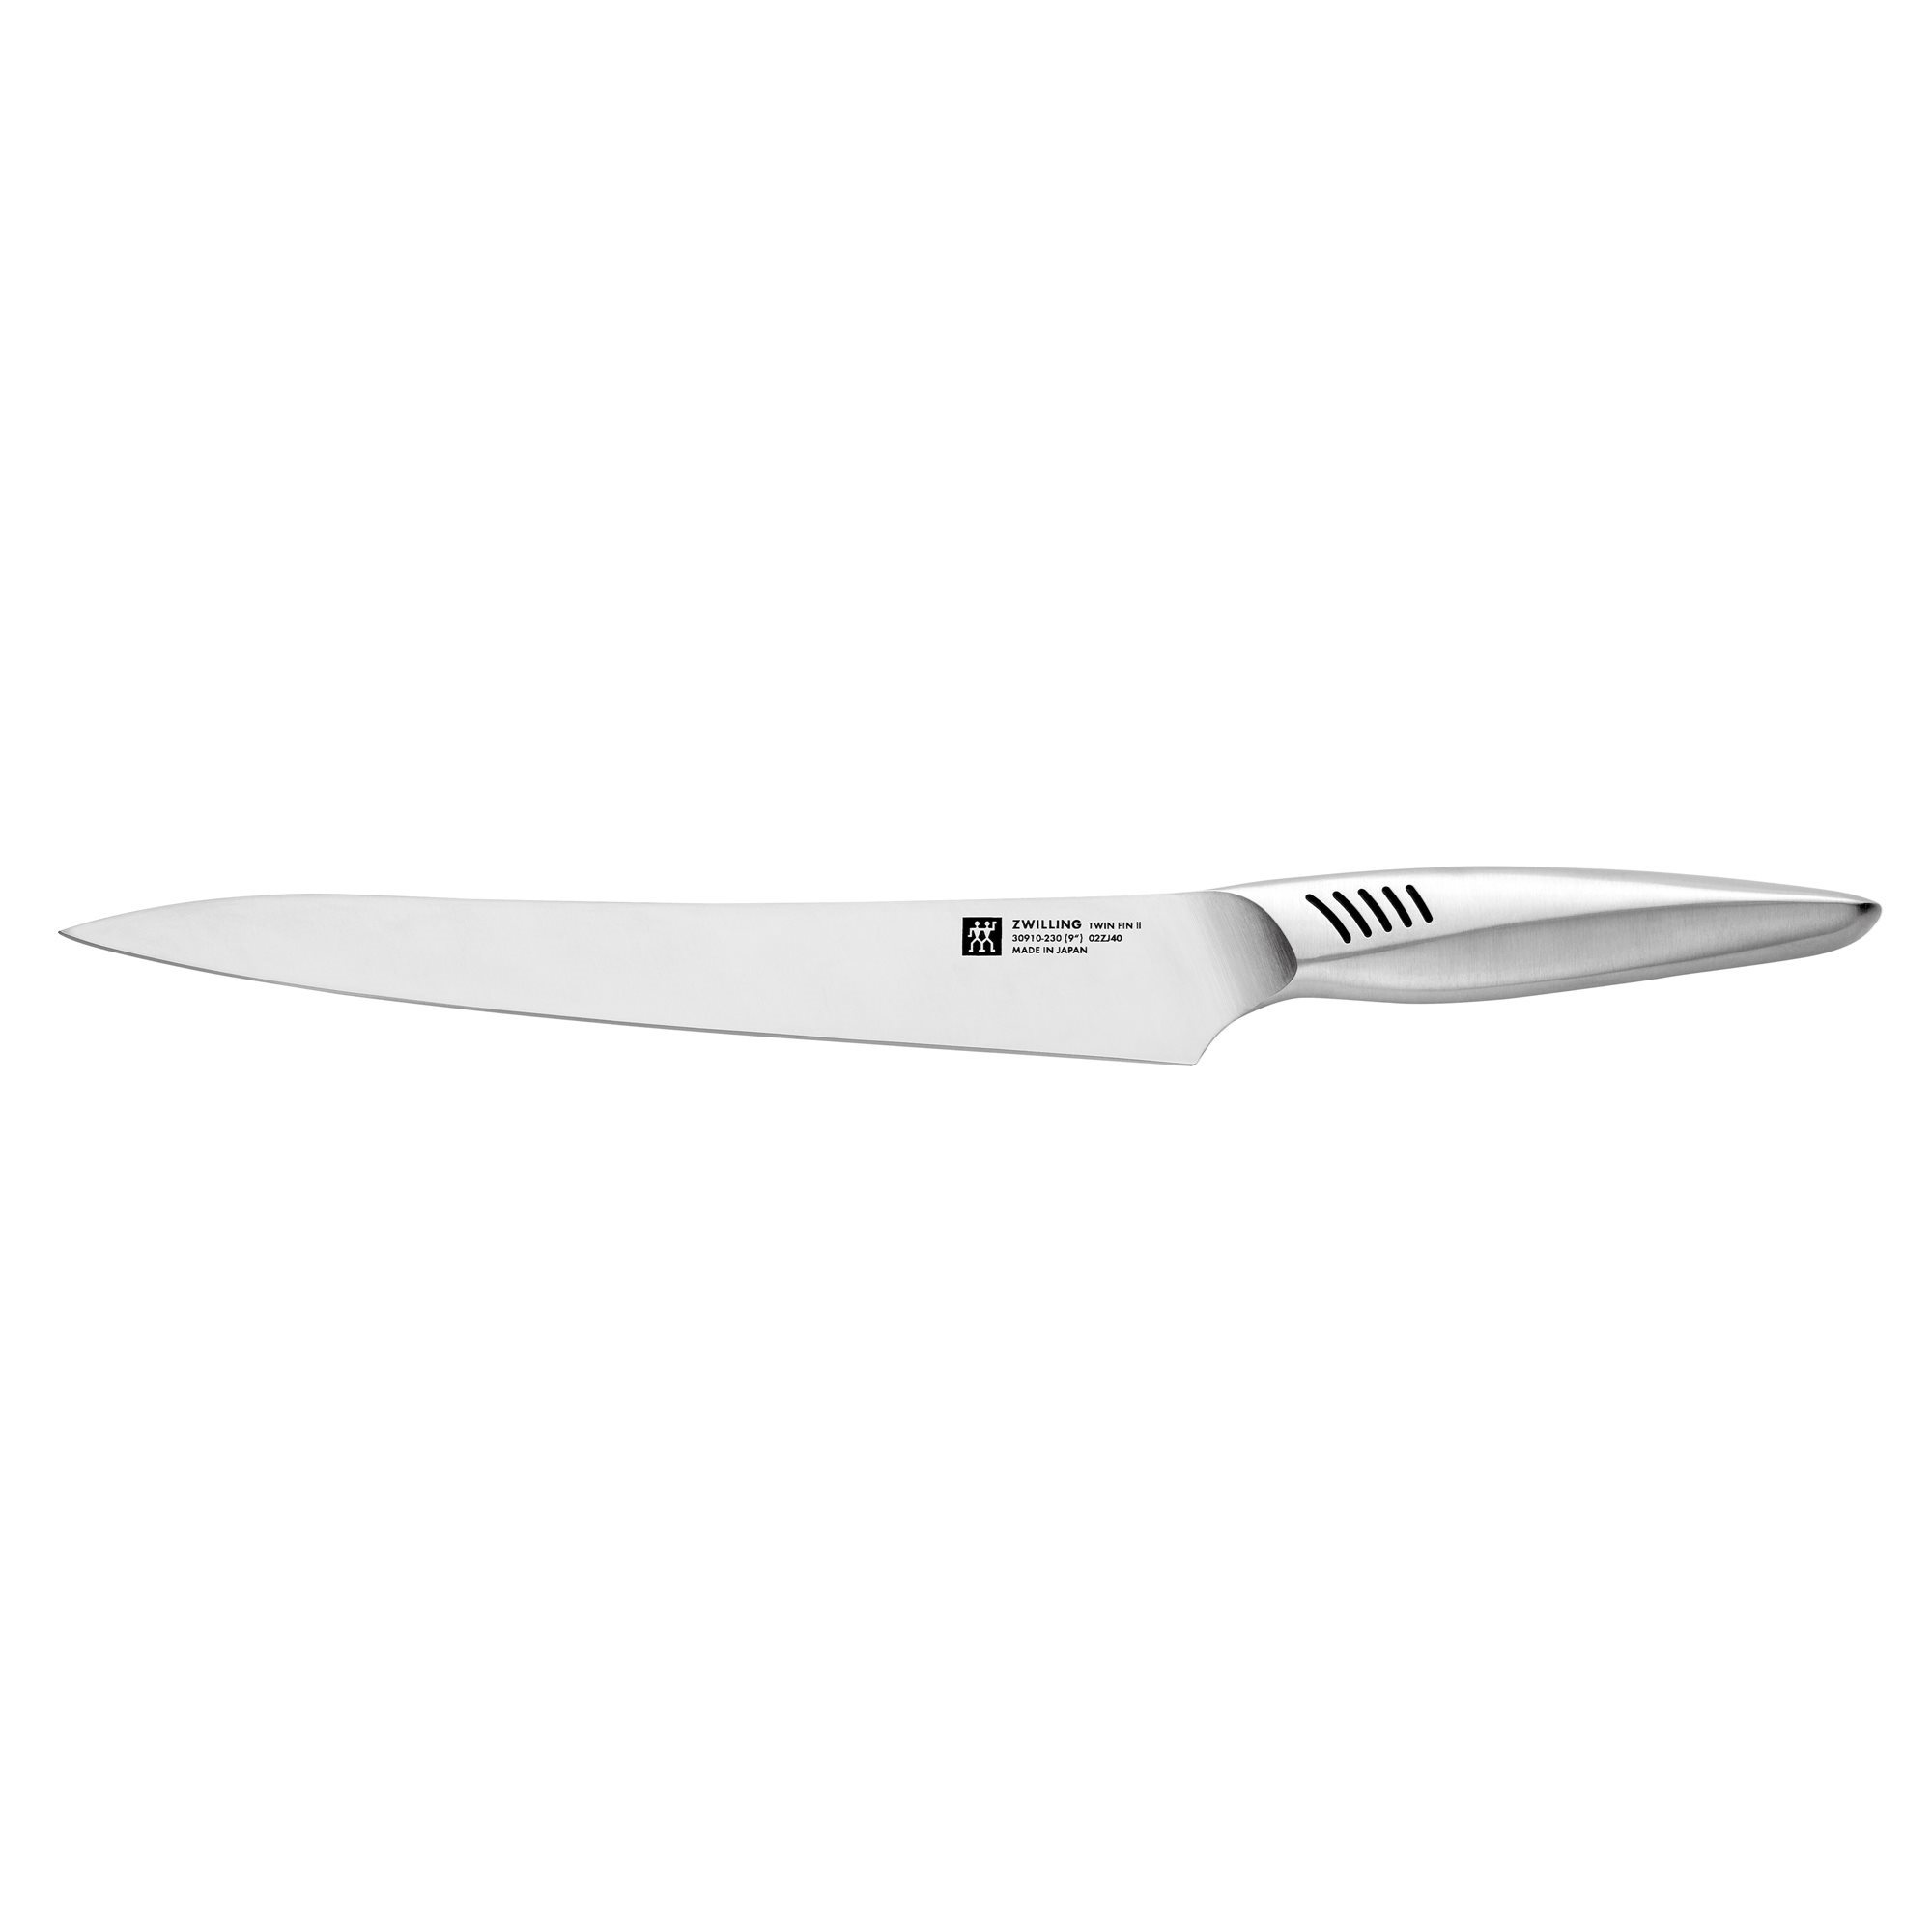 Santoku knife, 17 cm, TWIN Fin II - Zwilling